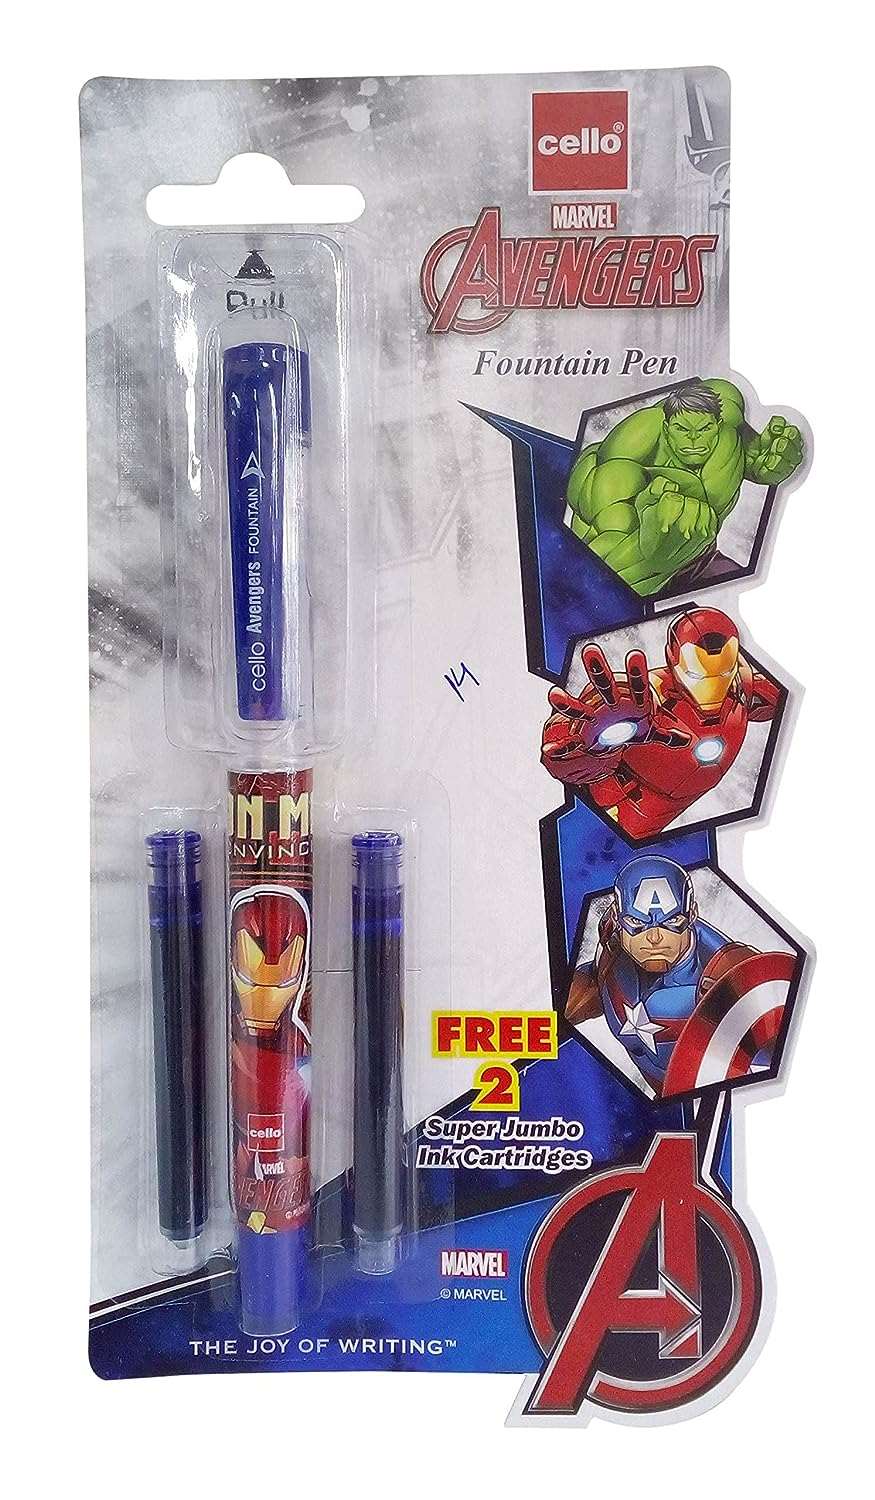 Cello Avengers Fountain Pen